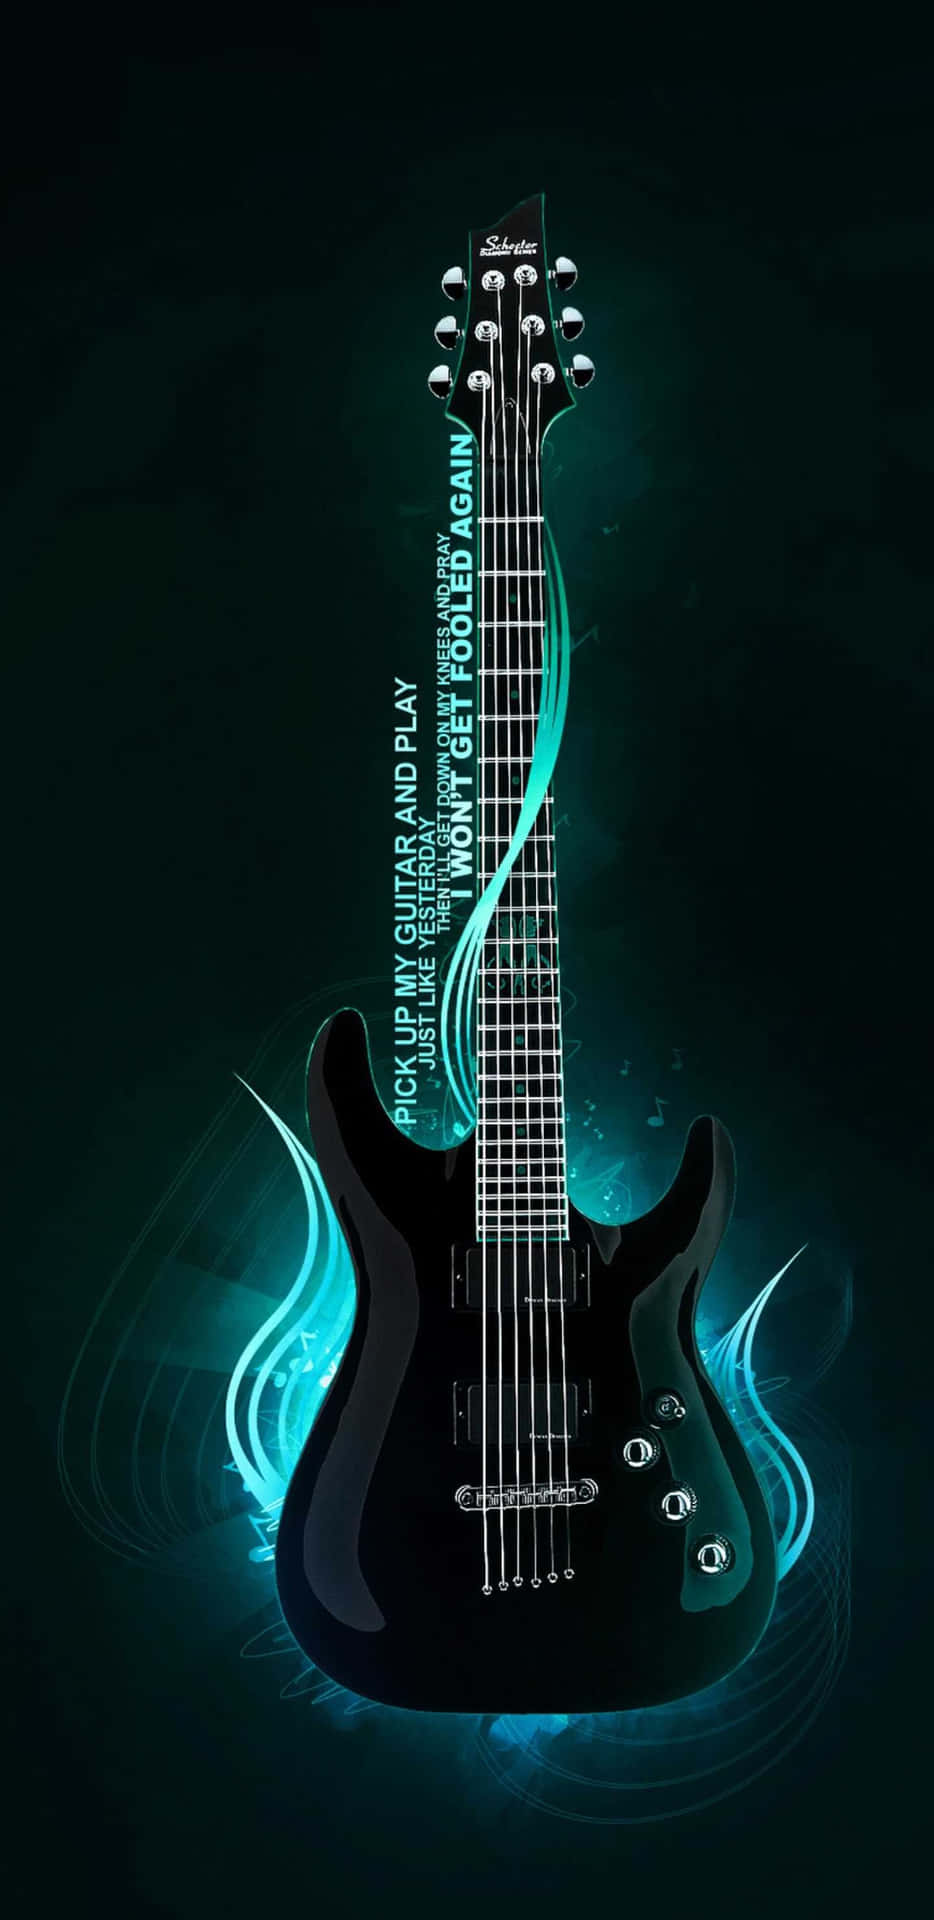 Bajode Guitarra Azul Arte De Movimiento Giratorio En Dispositivos Móviles. Fondo de pantalla